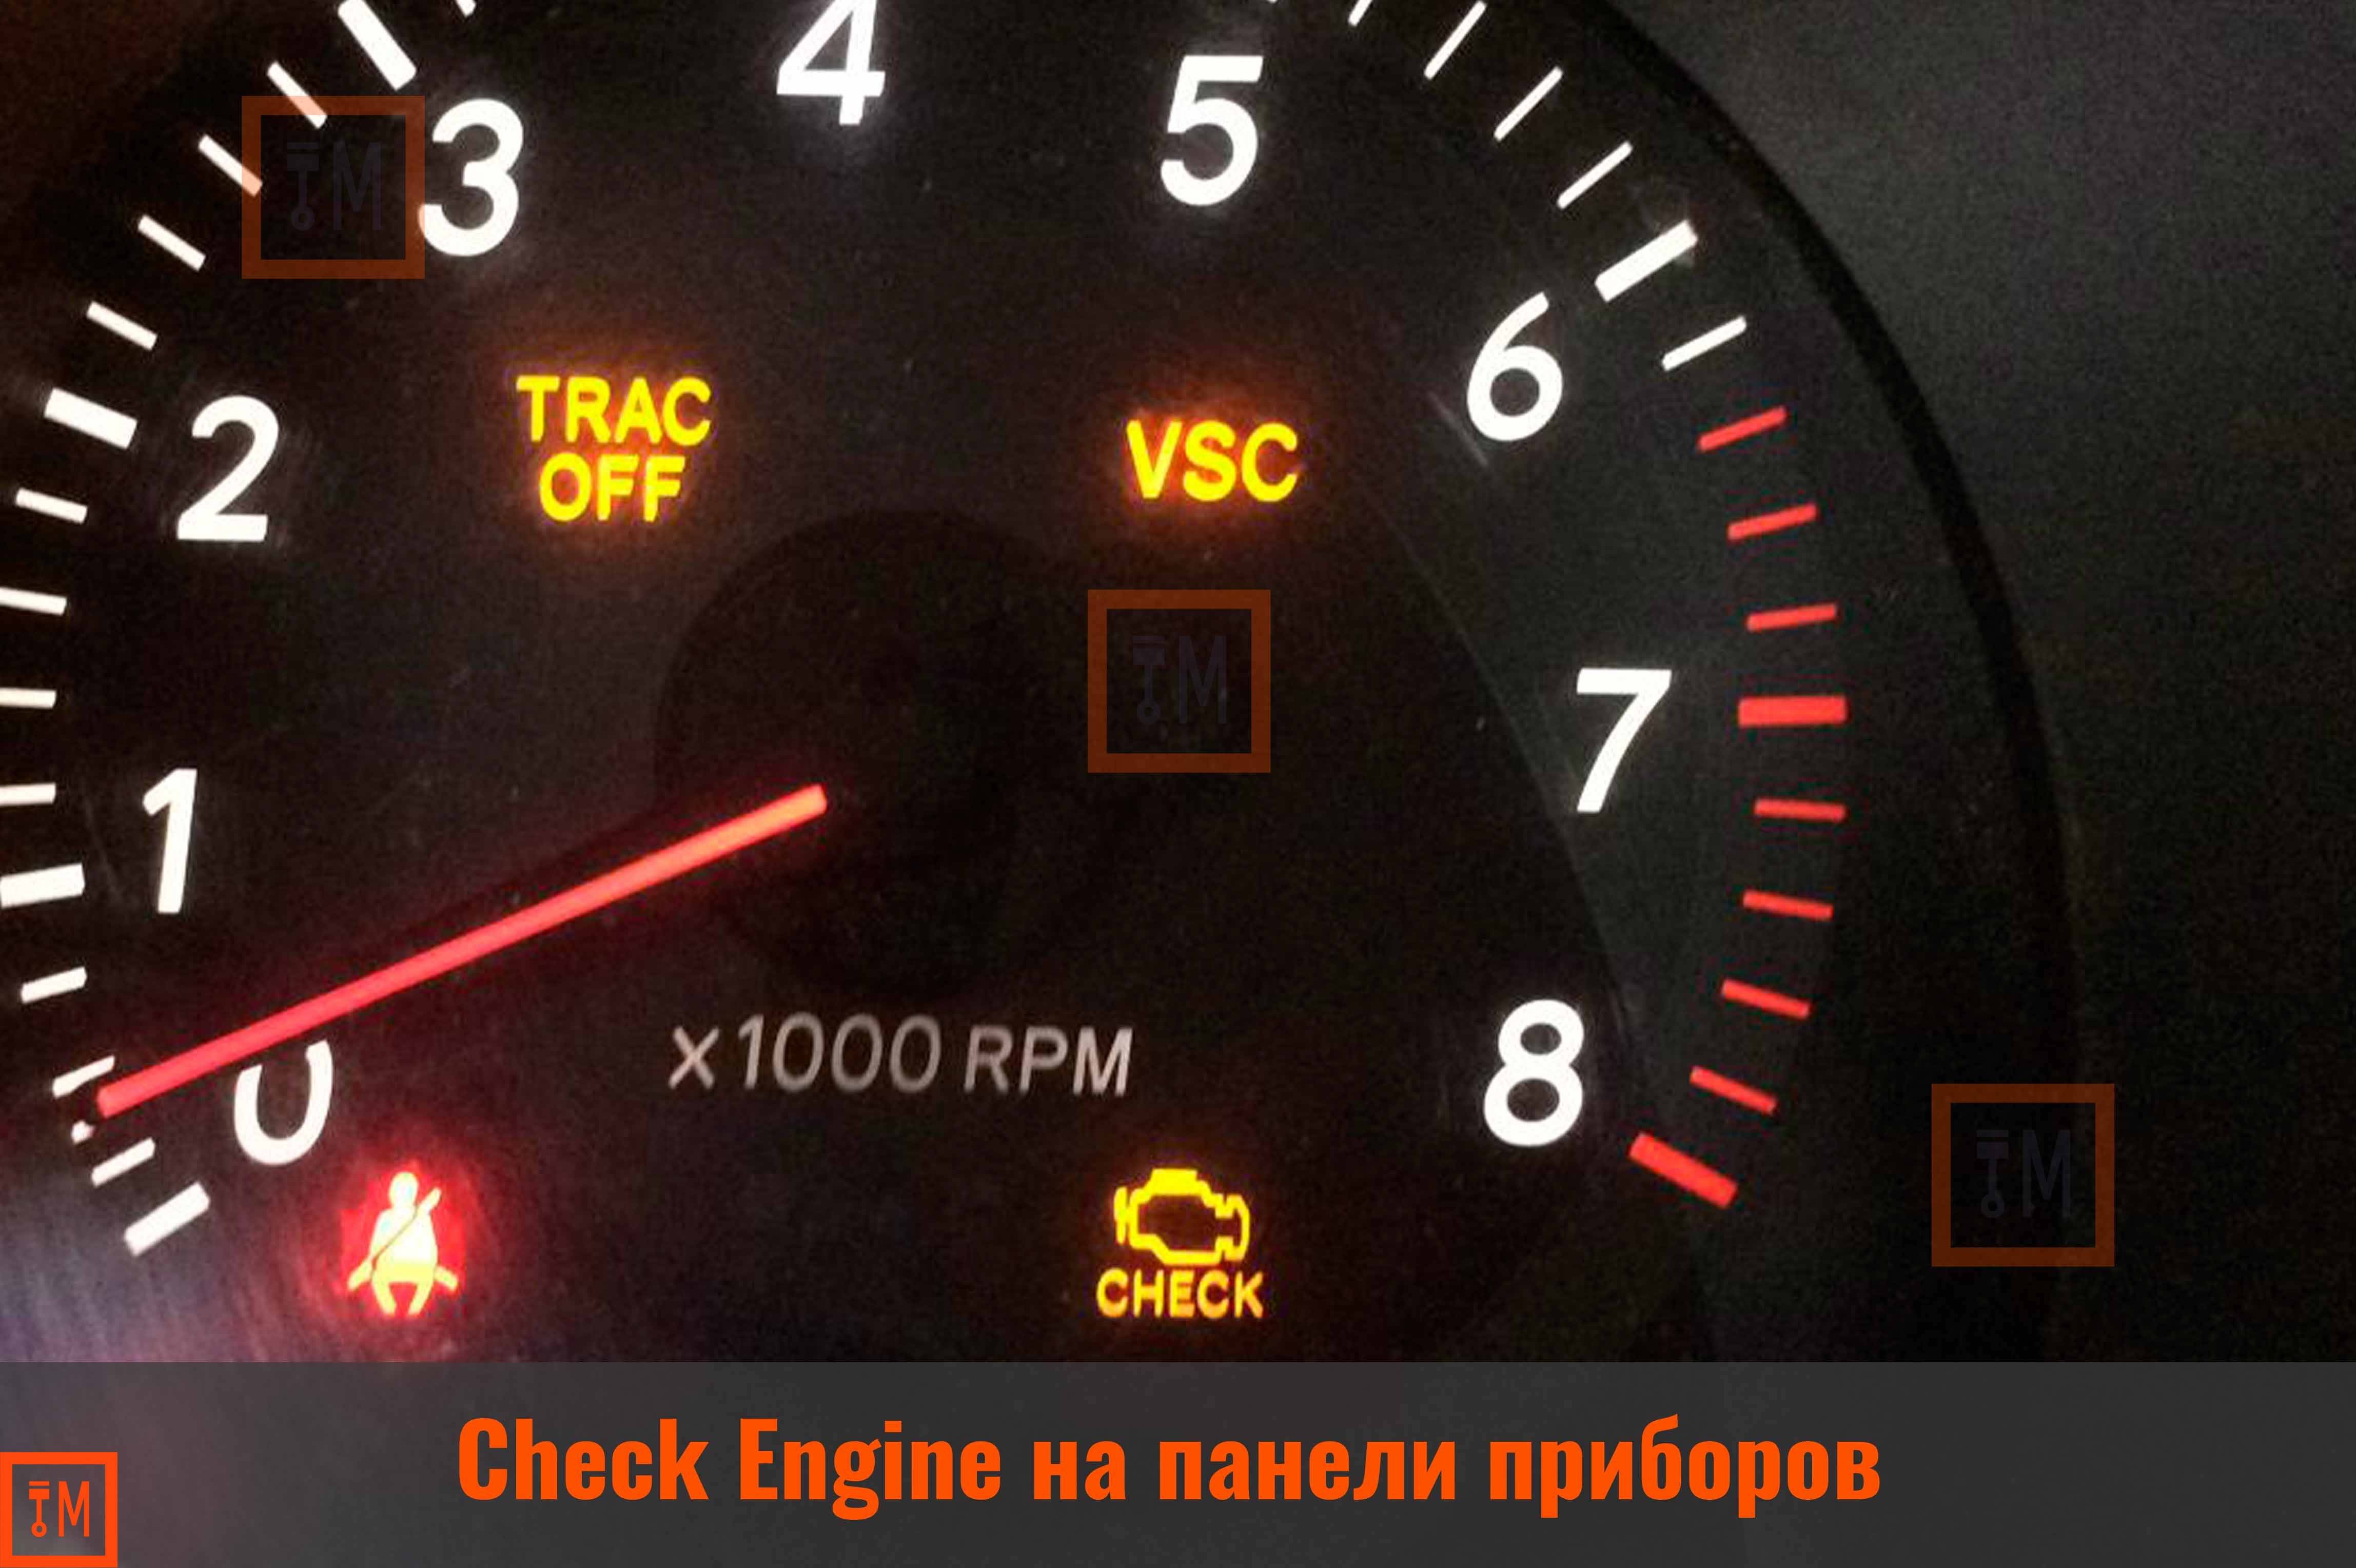 Загорелся чек двигателя: причины и способы, как погасить индикатор check engine